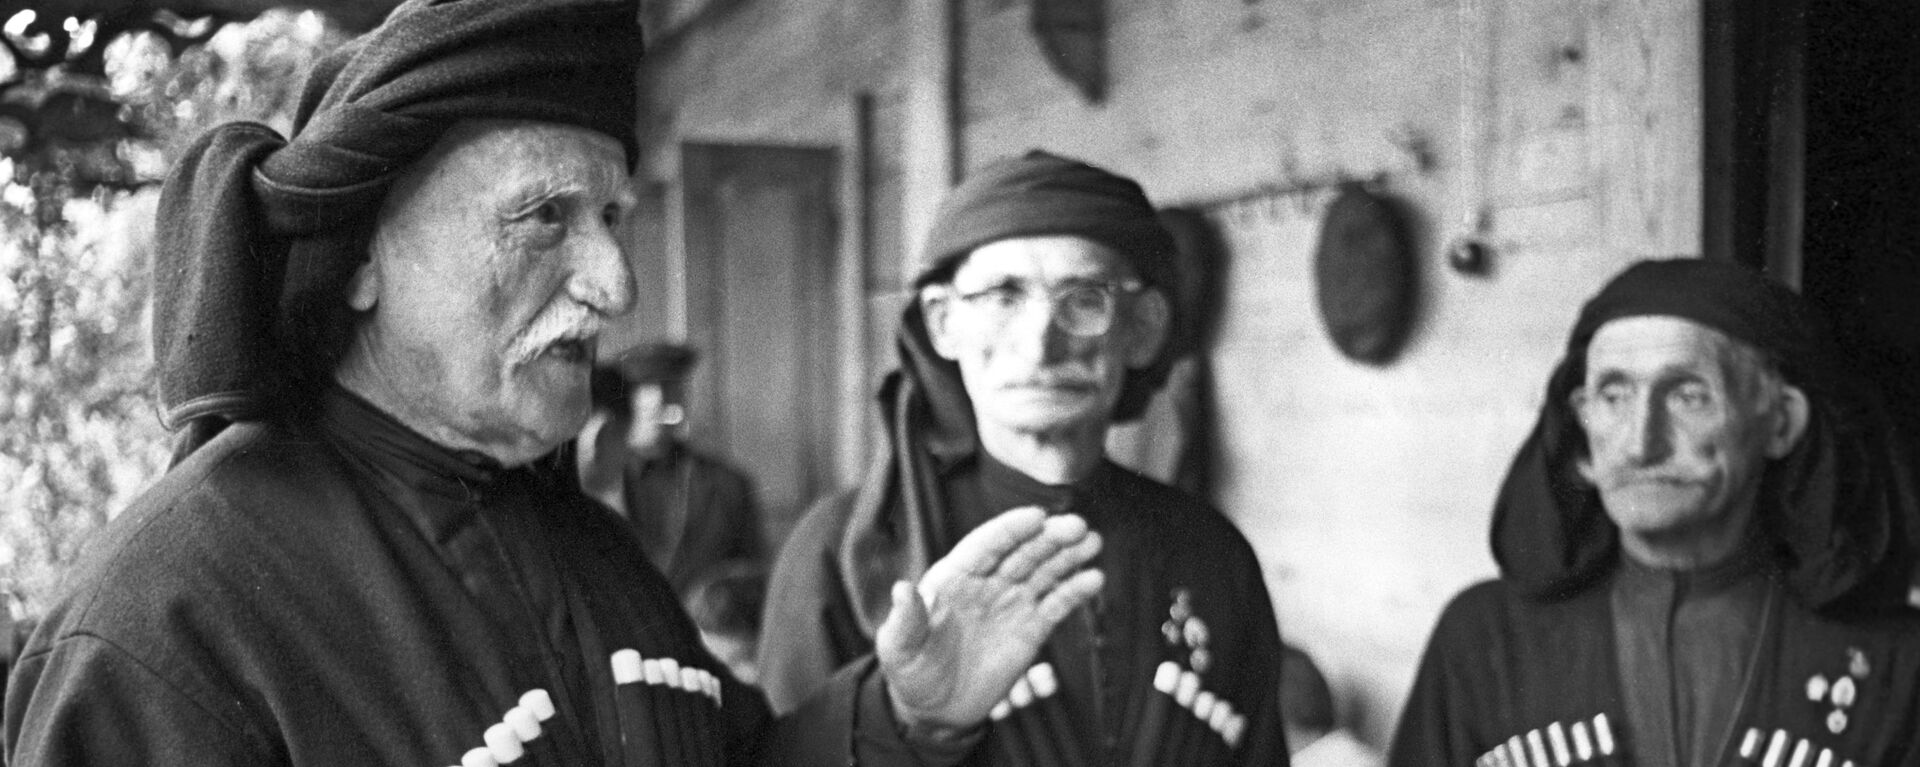 Долгожители из абхазского села Джерда (слева направо): Теба Шармат (115 лет), Нестор Ашуба(95 лет), Шларба Астана (110 лет) - Sputnik Аҧсны, 1920, 26.01.2020